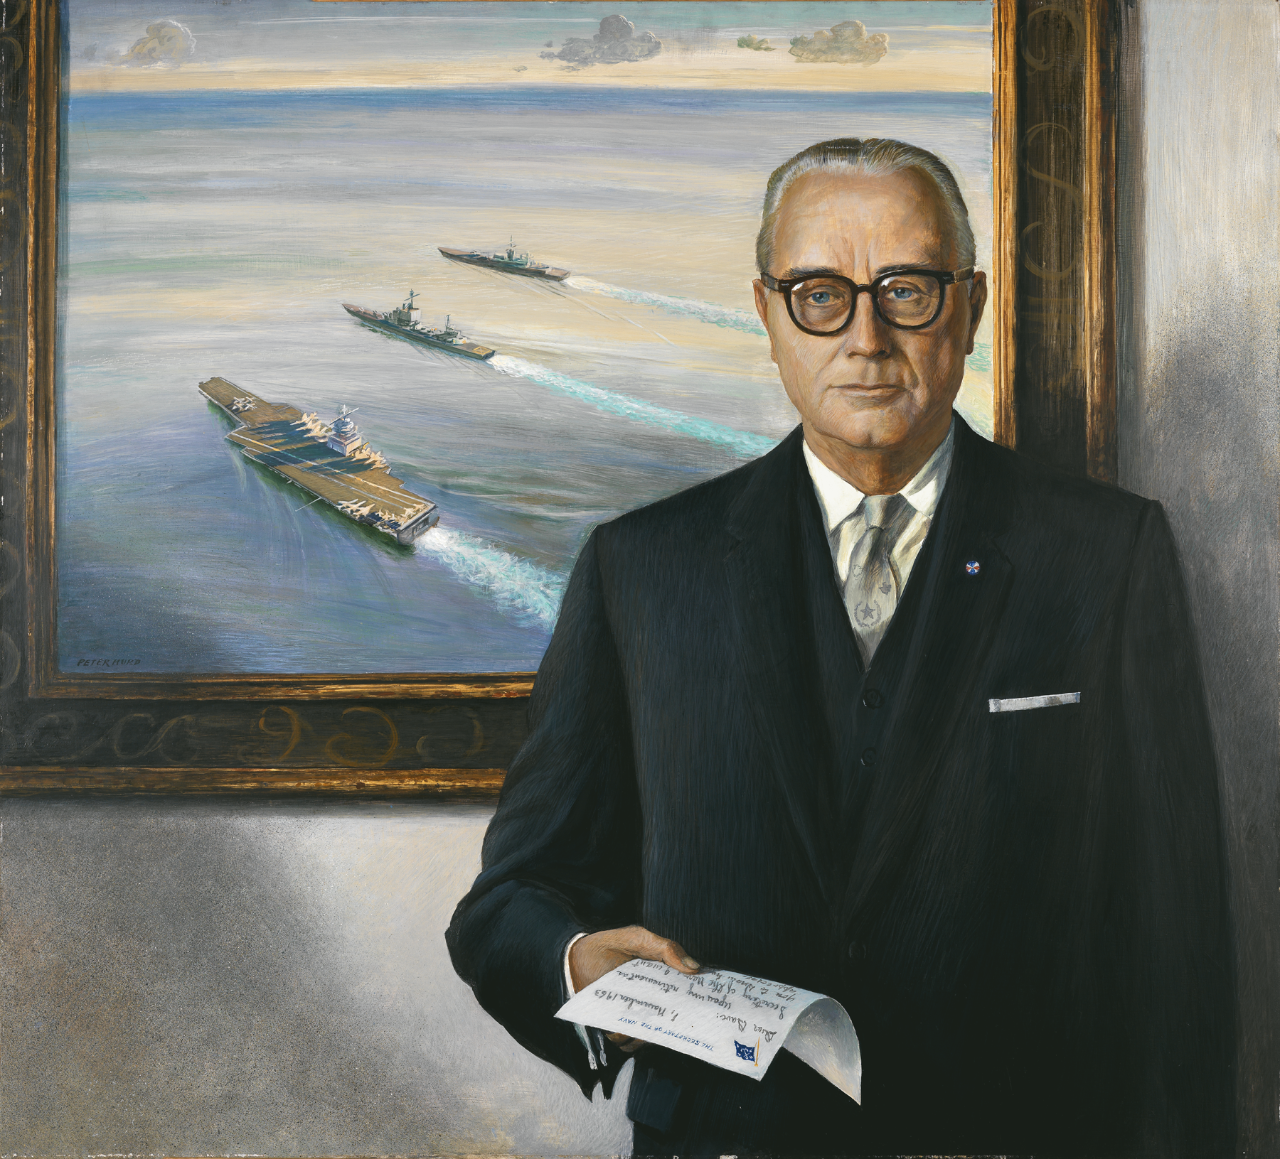 Portrait of Secretary of the Navy Frederick Herman Korth